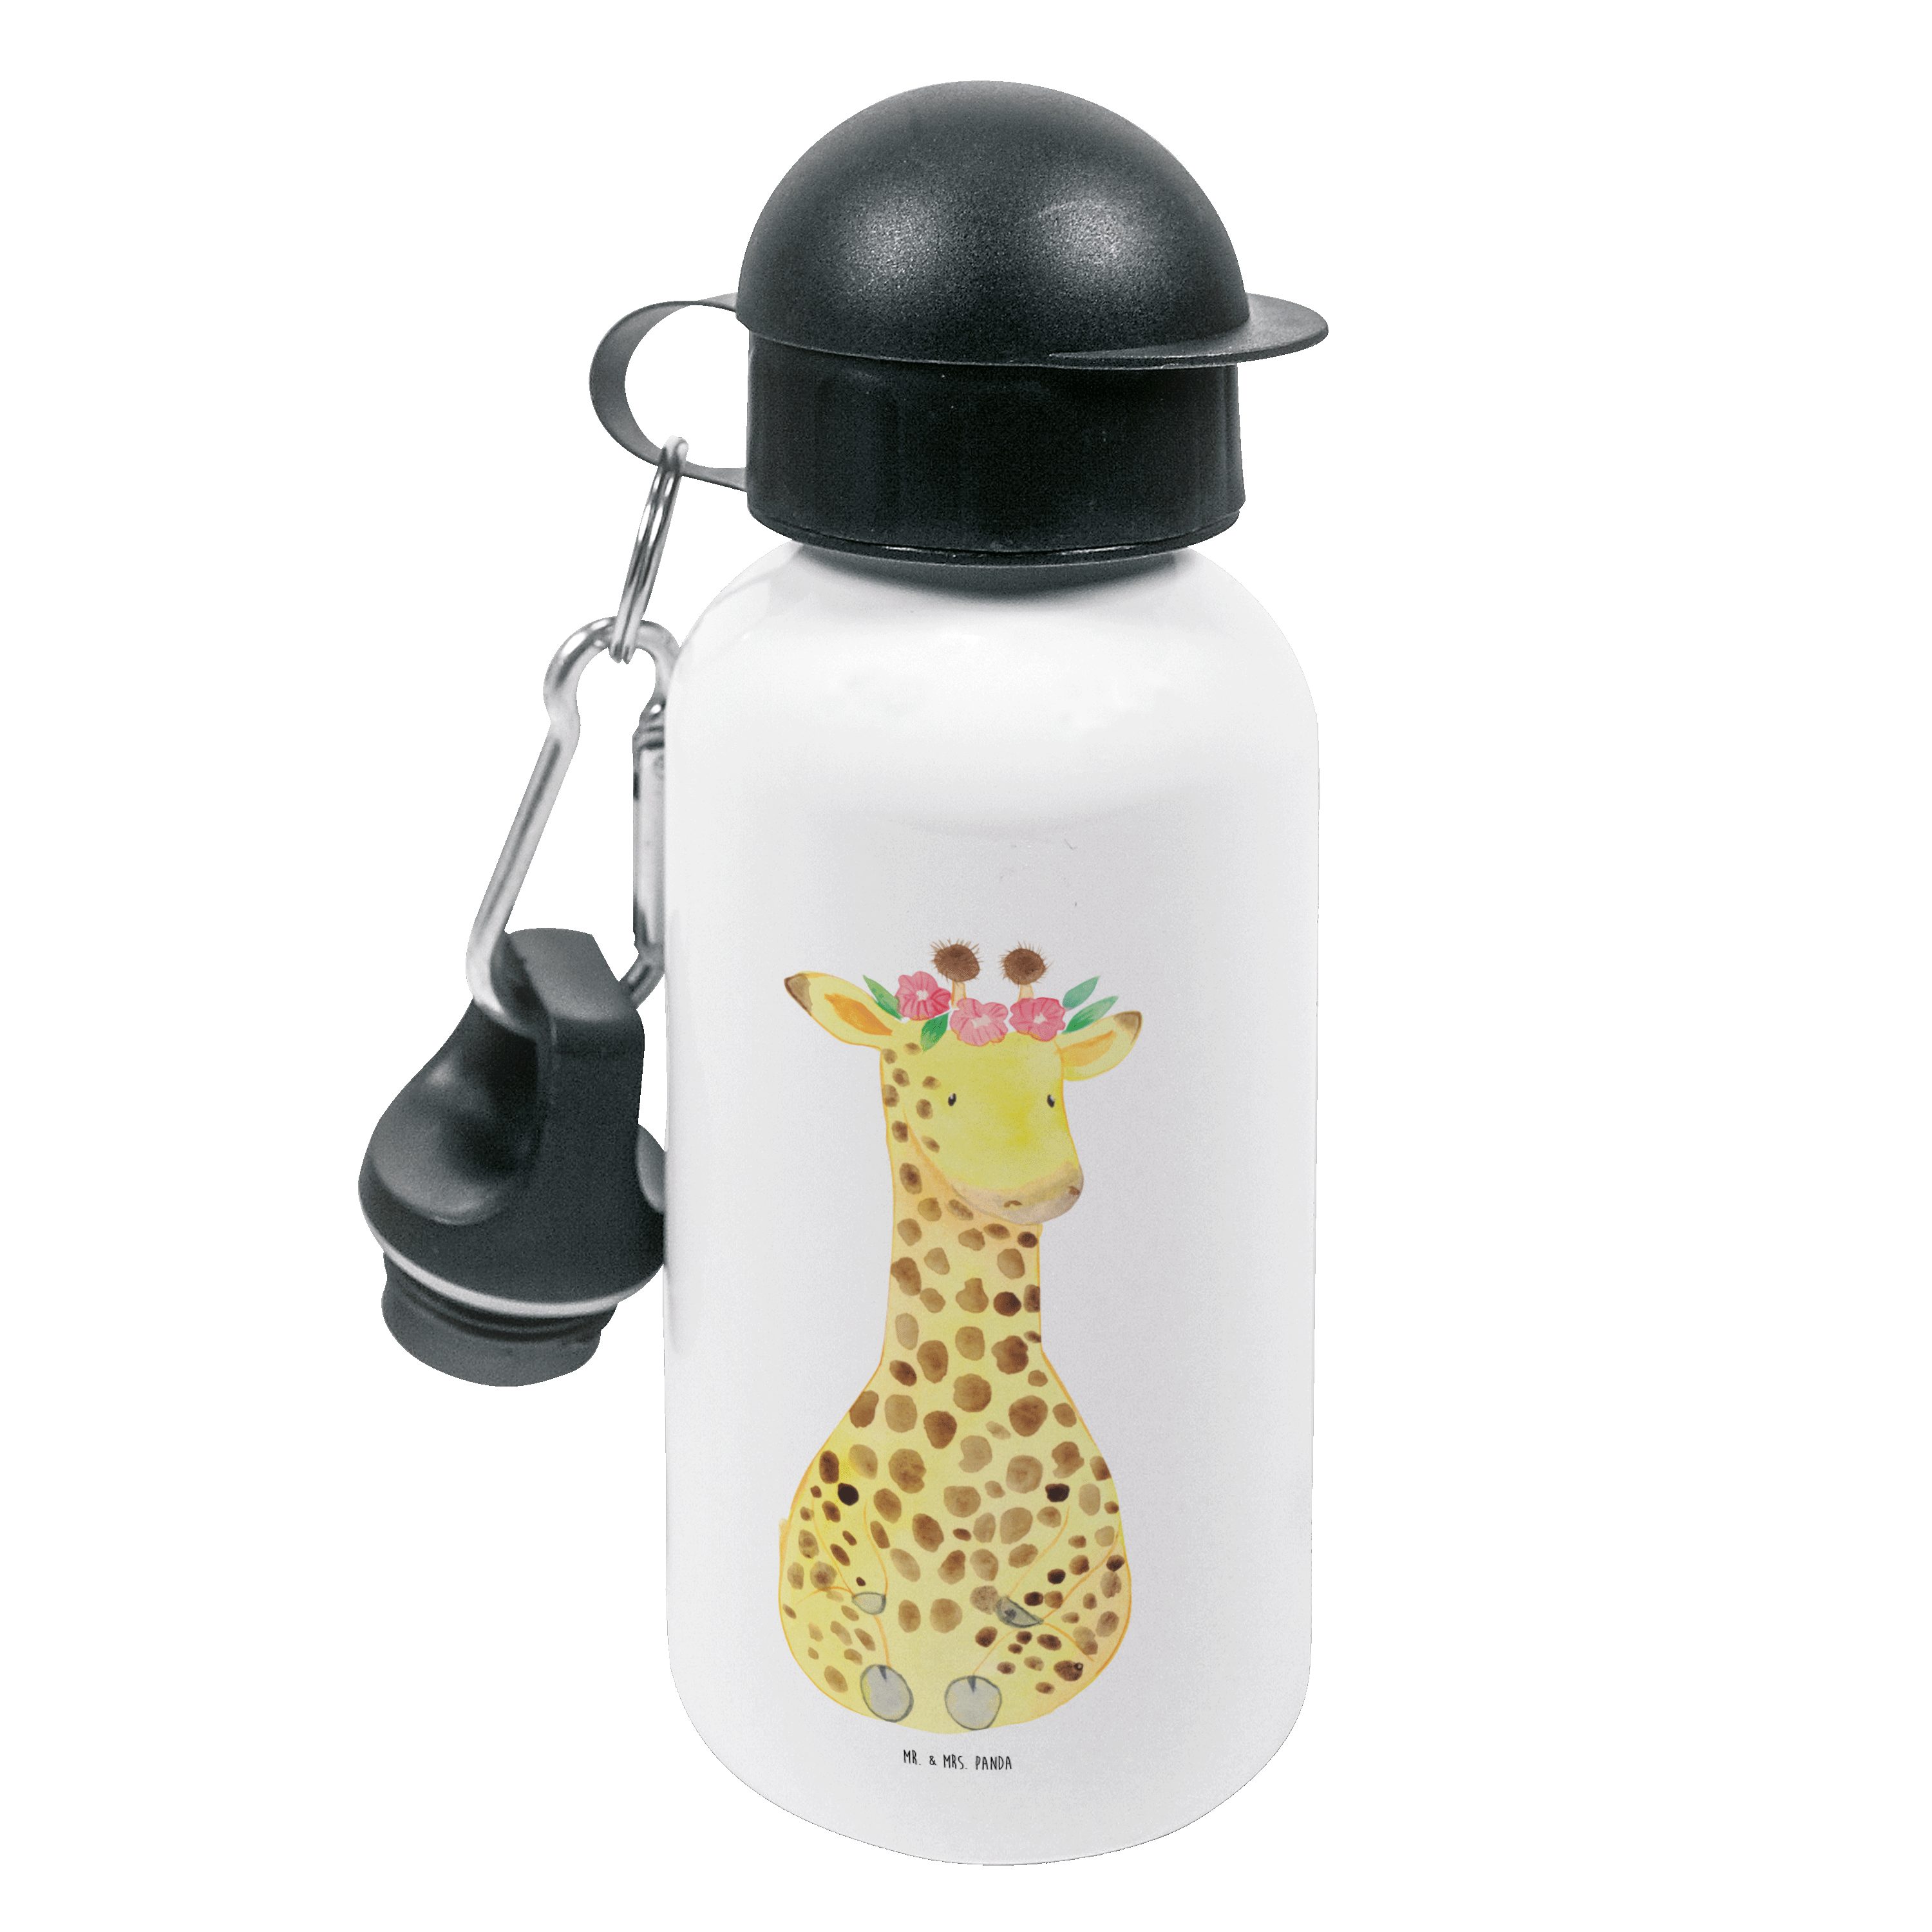 Mr. & Mrs. Panda Trinkflasche Giraffe Blumenkranz - Weiß - Geschenk, Kids, Abenteurer, Afrika, Selb